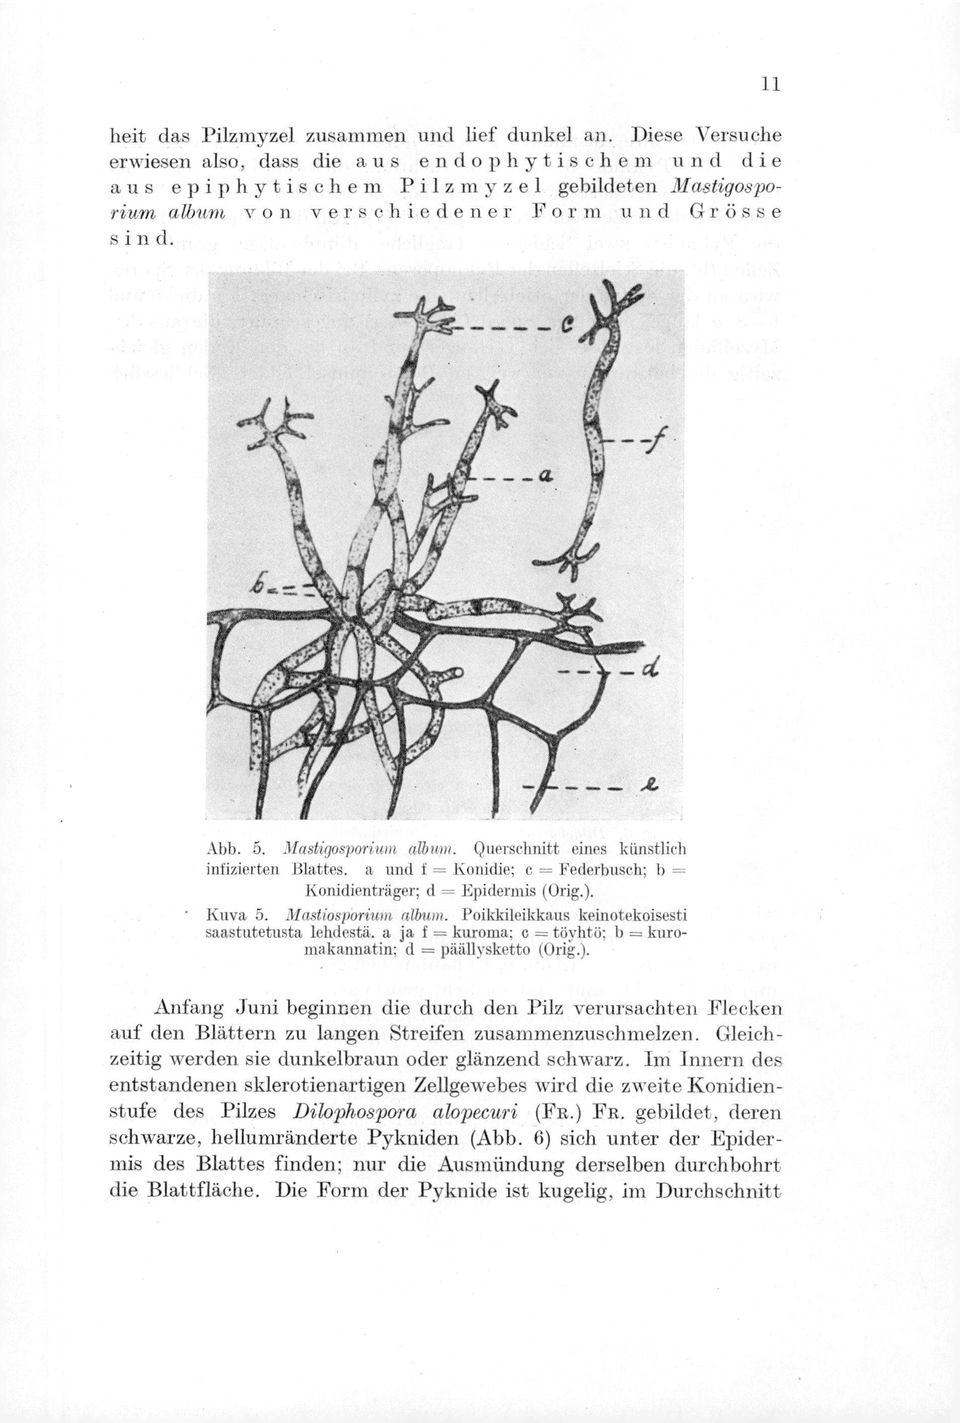 Mastigosporium album. Querschnitt eines kiinstlich infizierten Blattes. a und f = Konidie; c = Federbusch; b = Konidienträger; d = Epidermis (Orig.). Kuva 5. Mastiosporium album.